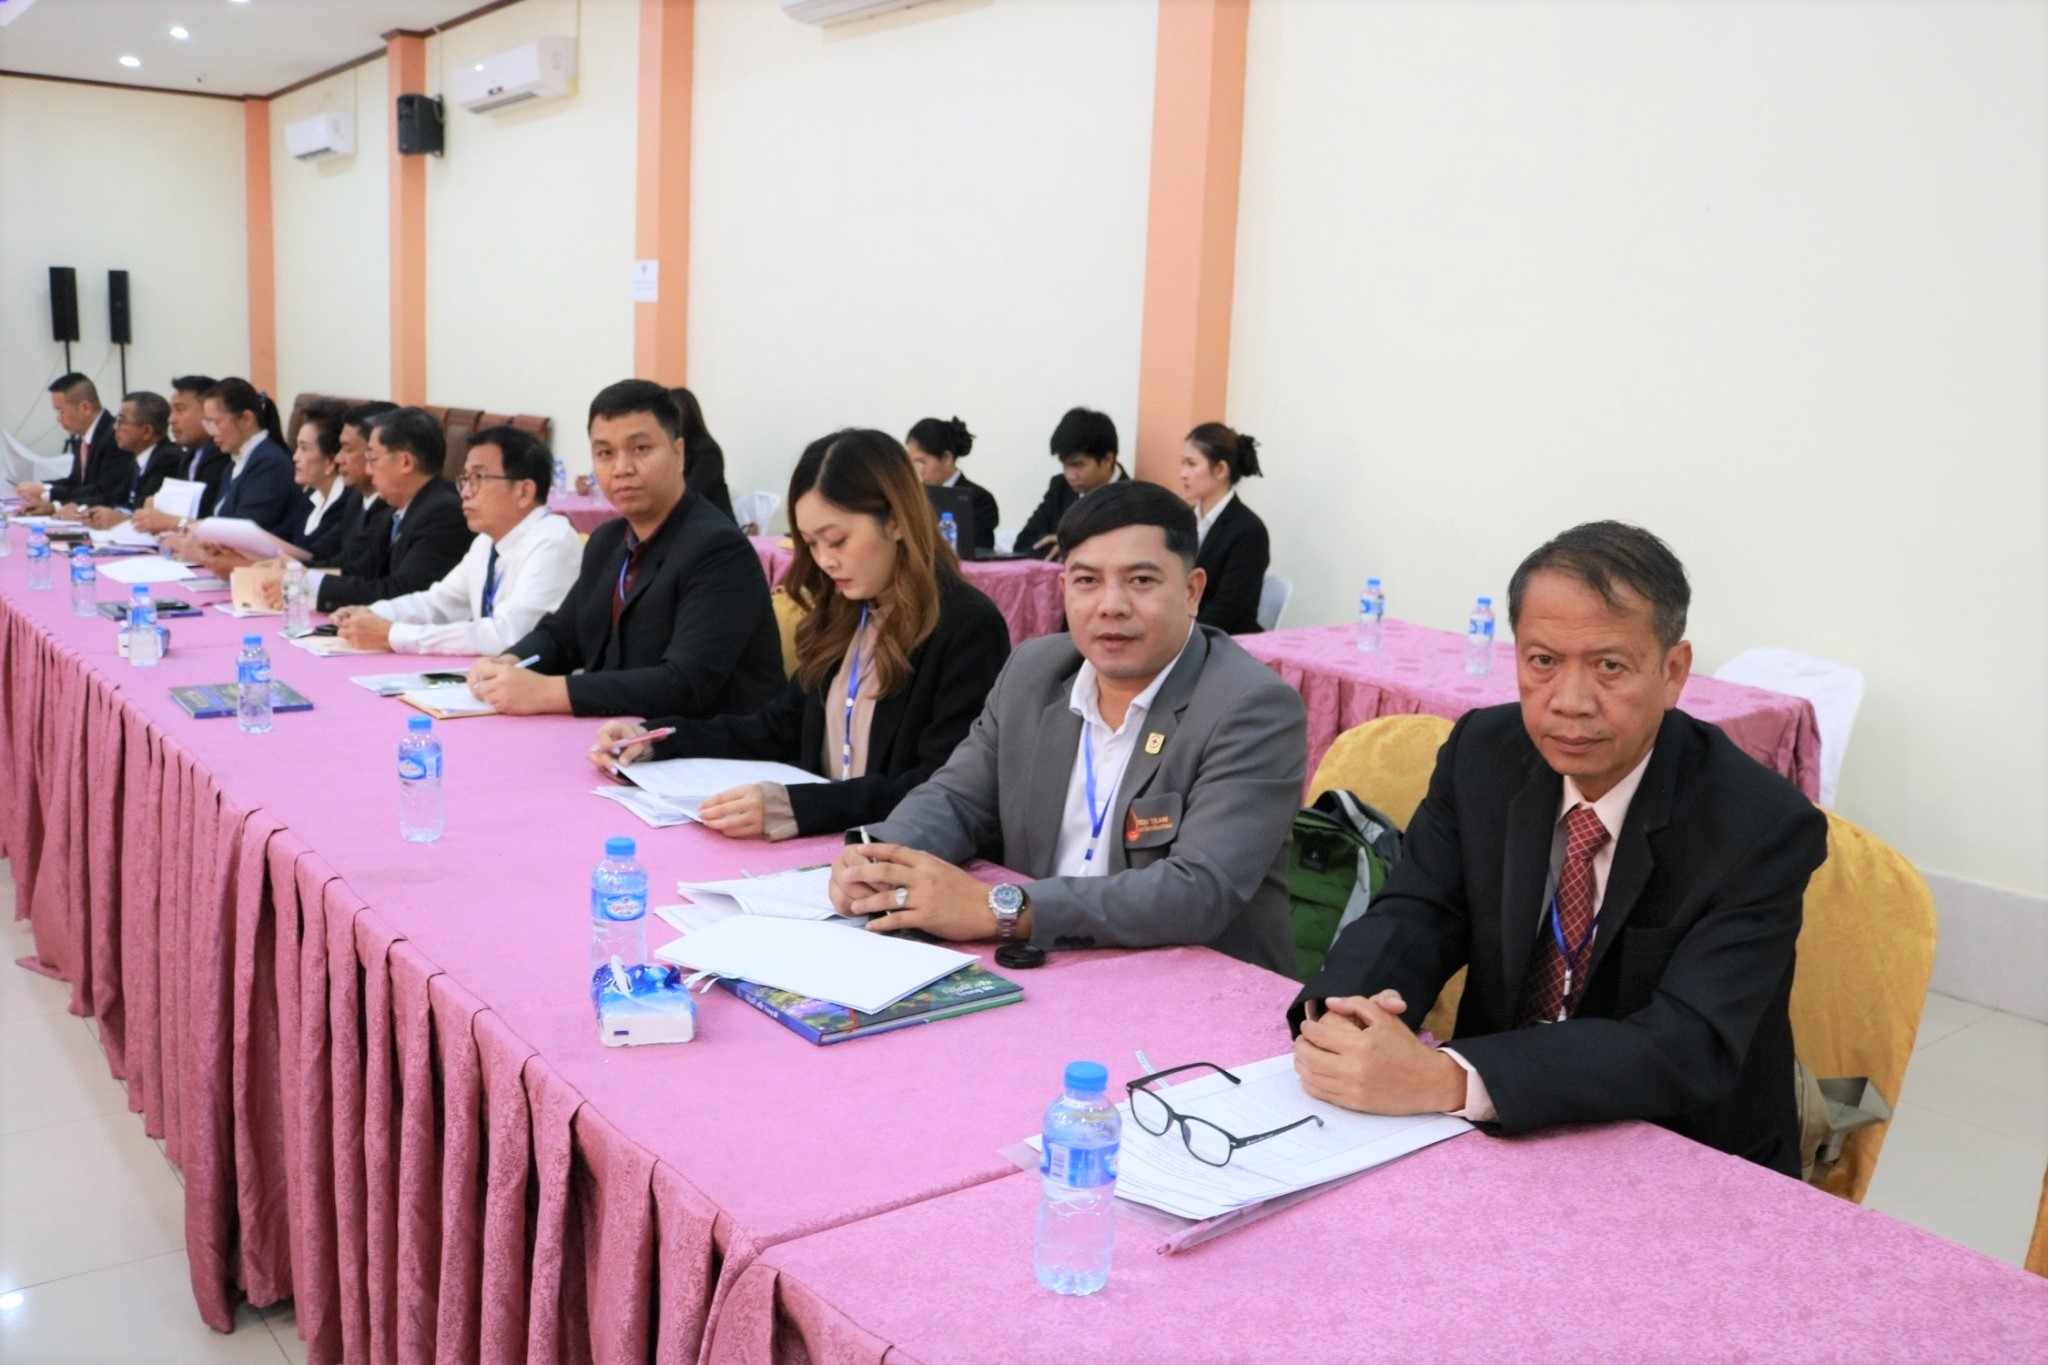 ม.นครพนม ร่วมประชุมคณะอนุกรรมการเพื่อเตรียมการประชุมผู้บริหารระดับสูง 3 ประเทศ 9 จังหวัด (ไทย - ลาว - เวียดนาม)